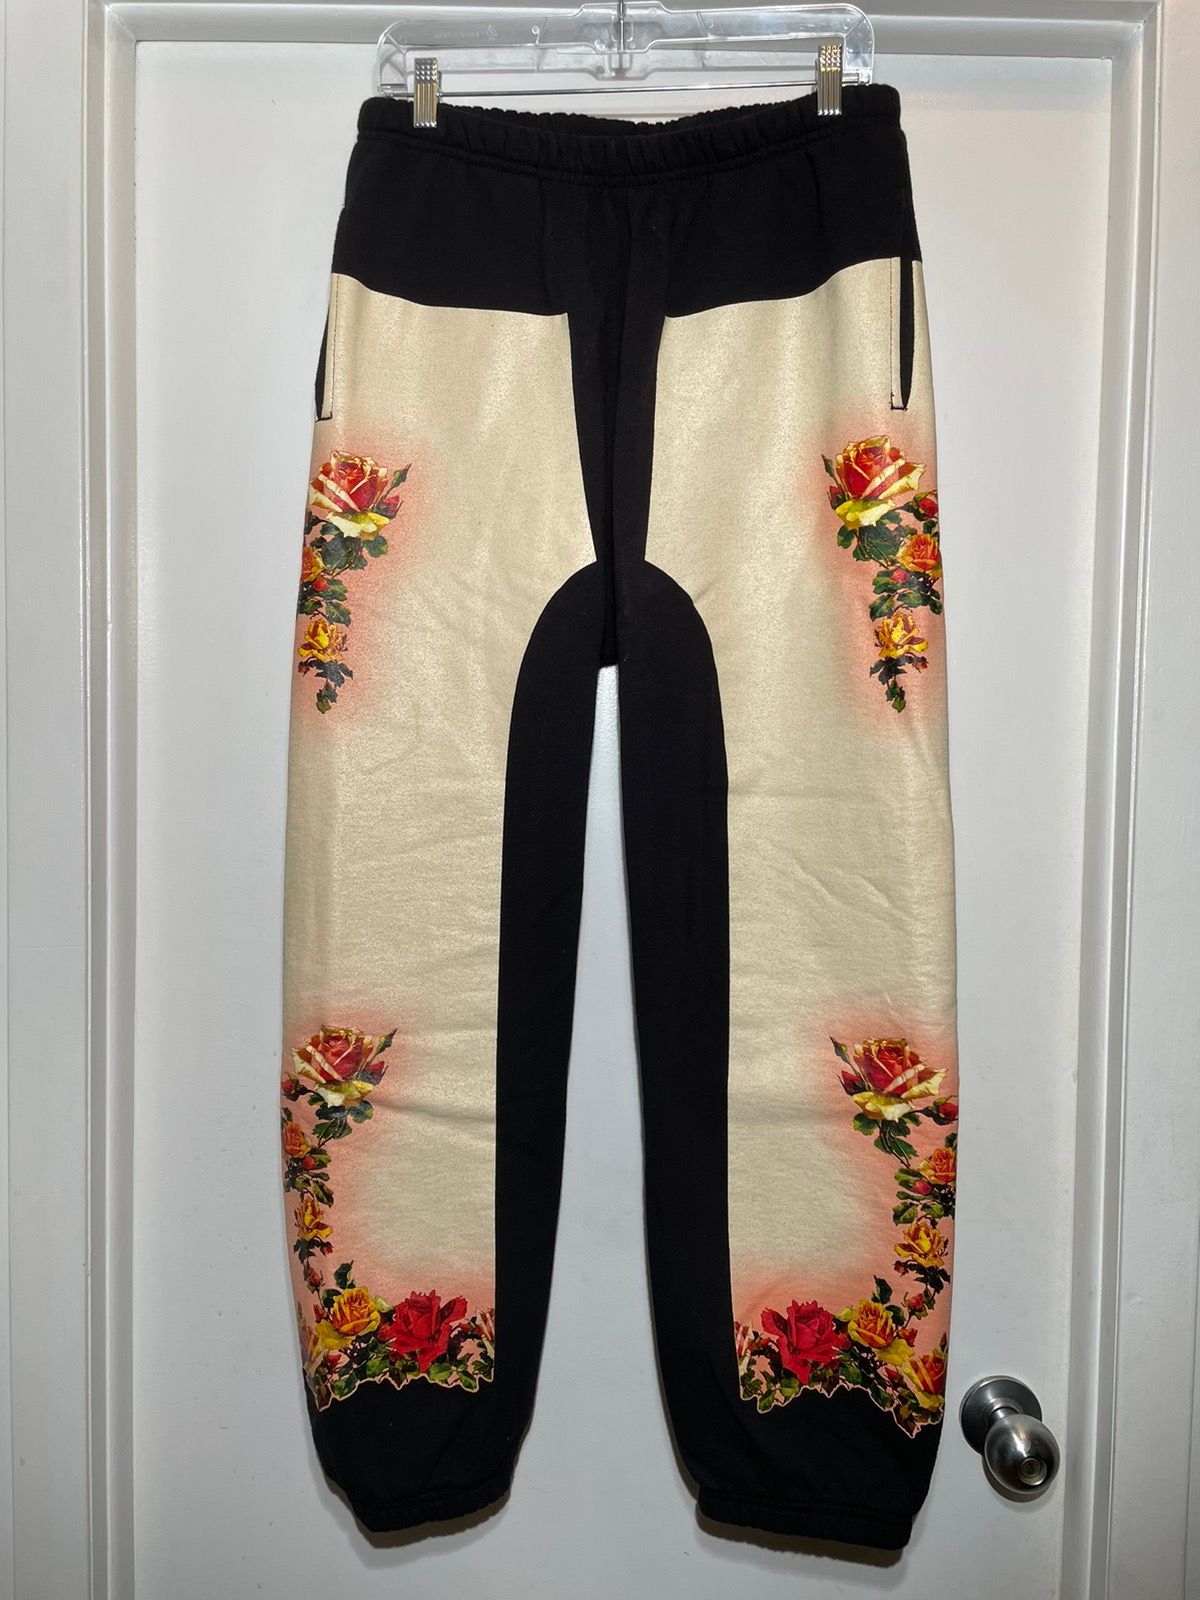 Supreme Supreme Jean Paul Gaultier Floral Sweatpants SS ‘19 Size US 32 / EU 48 - 1 Preview